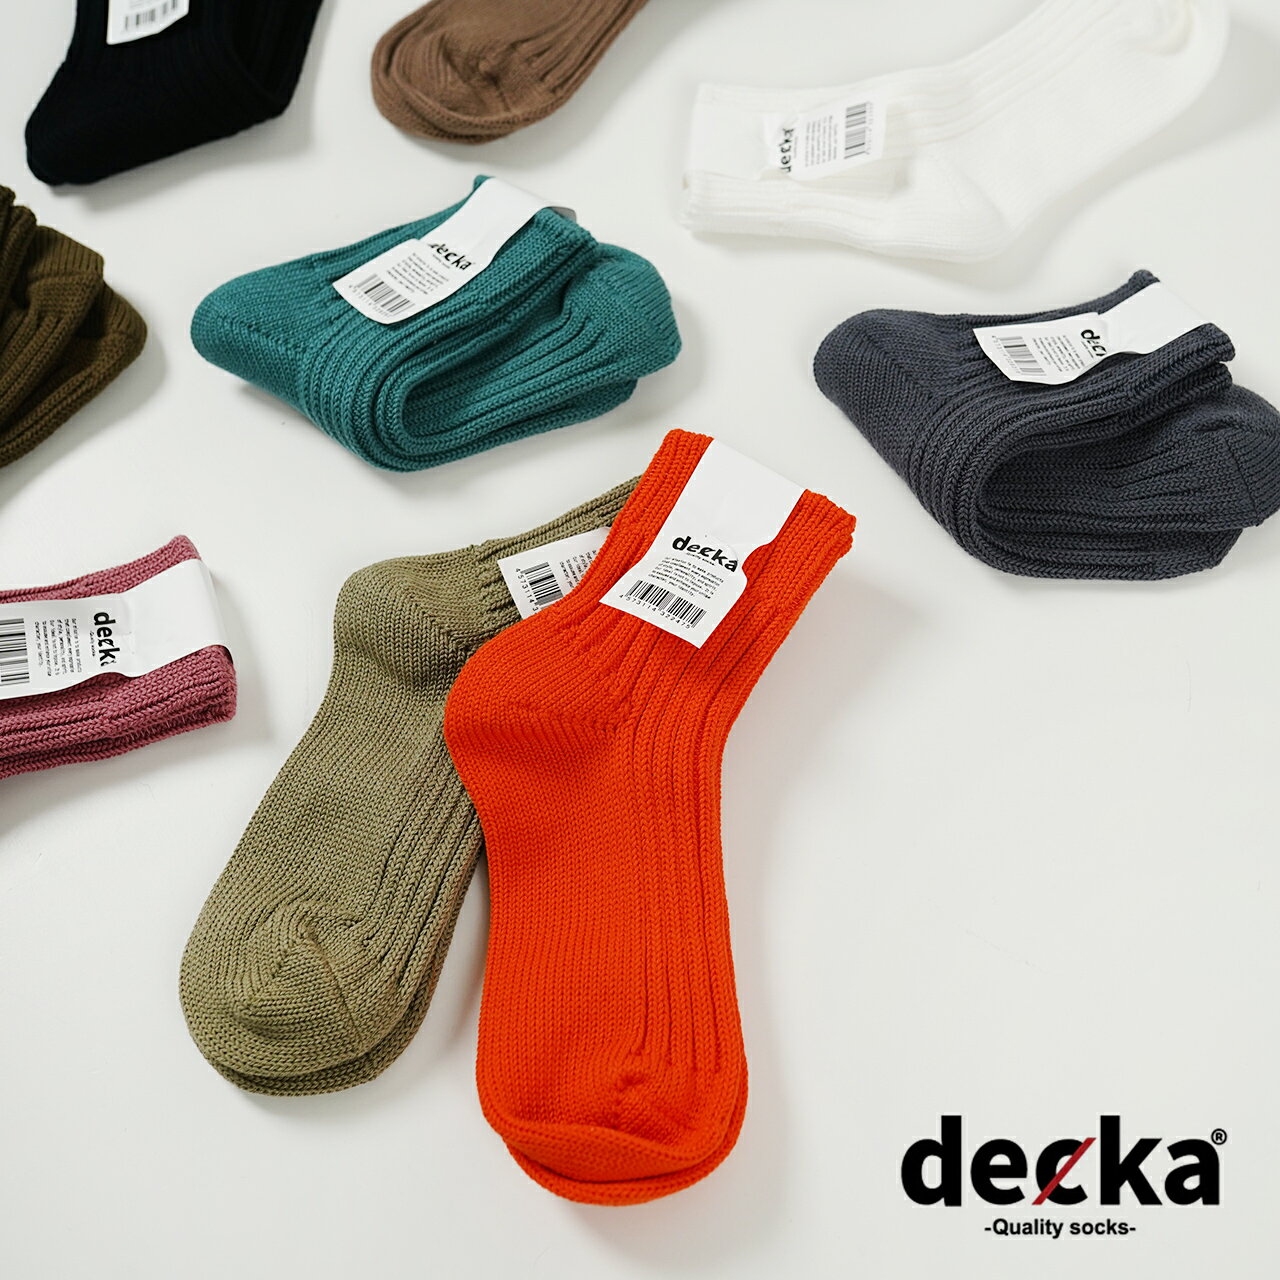 デカクオリティソックス decka Quality socks ローゲージ リブソックス ショートレングス Low Gauge Rib Socks Short Length 靴下 メンズ レディース de-26 de-26-2